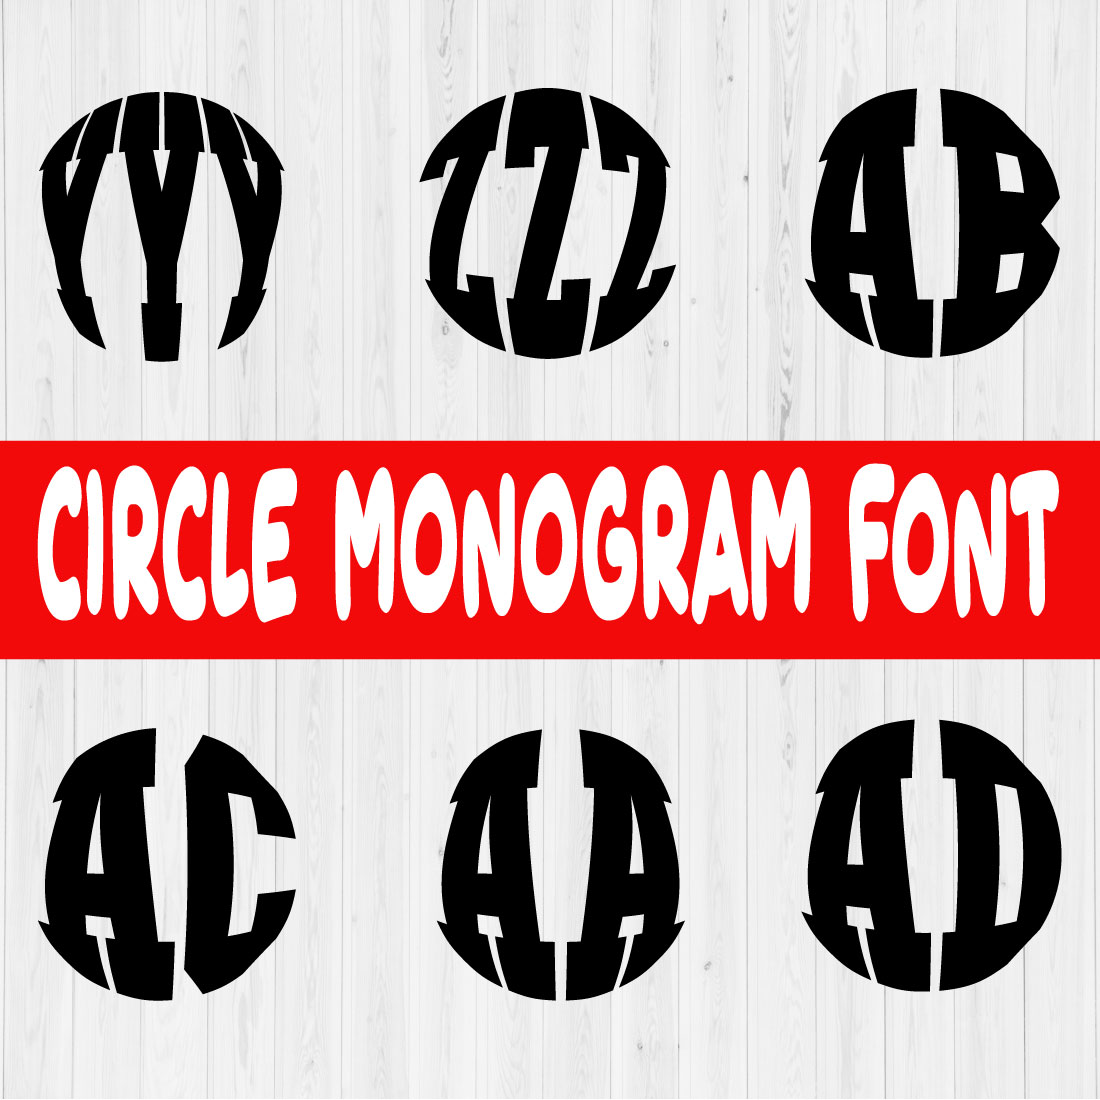 Circle Monogram Font Vol5 preview image.